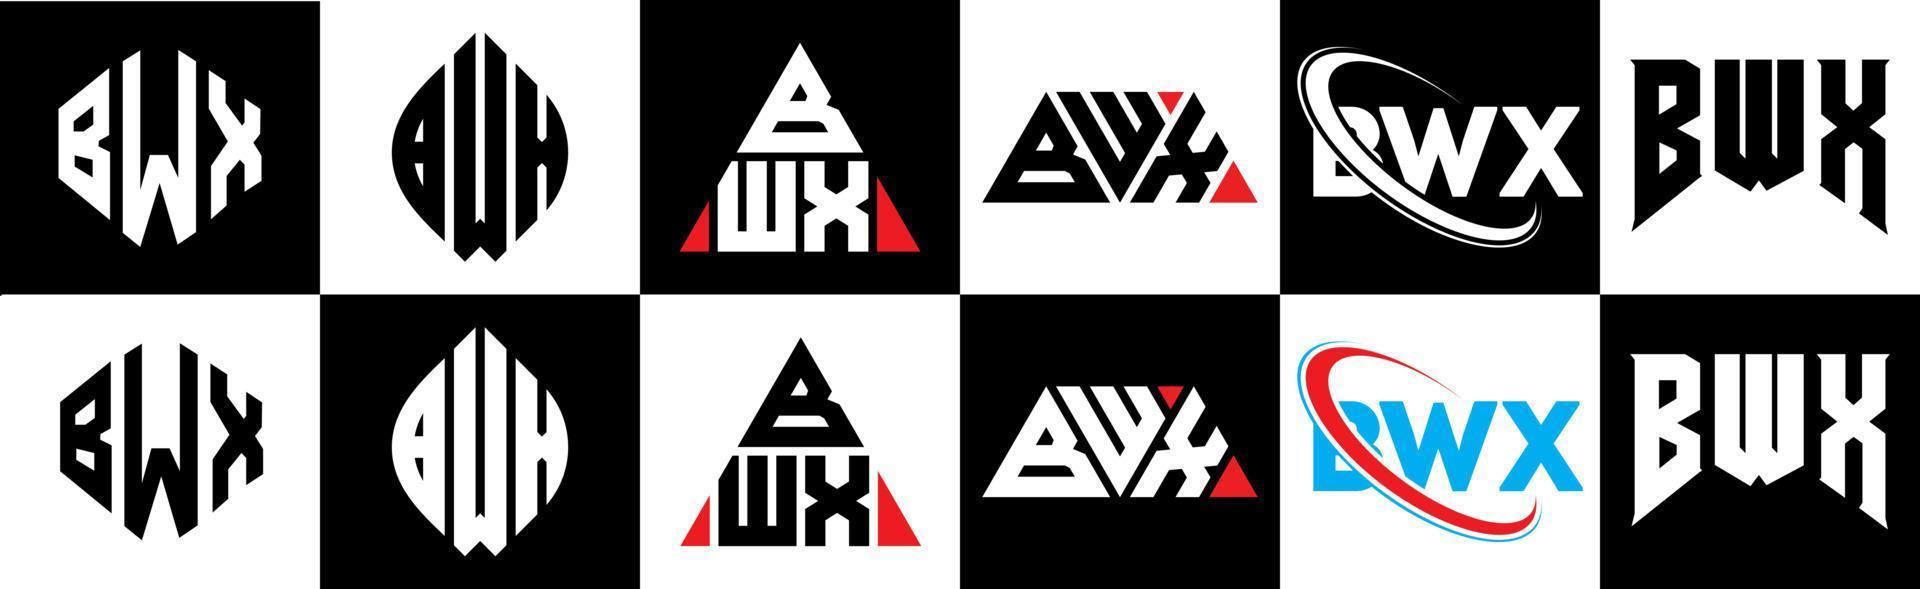 création de logo de lettre bwx en six styles. polygone bwx, cercle, triangle, hexagone, style plat et simple avec logo de lettre de variation de couleur noir et blanc dans un plan de travail. logo minimaliste et classique bwx vecteur